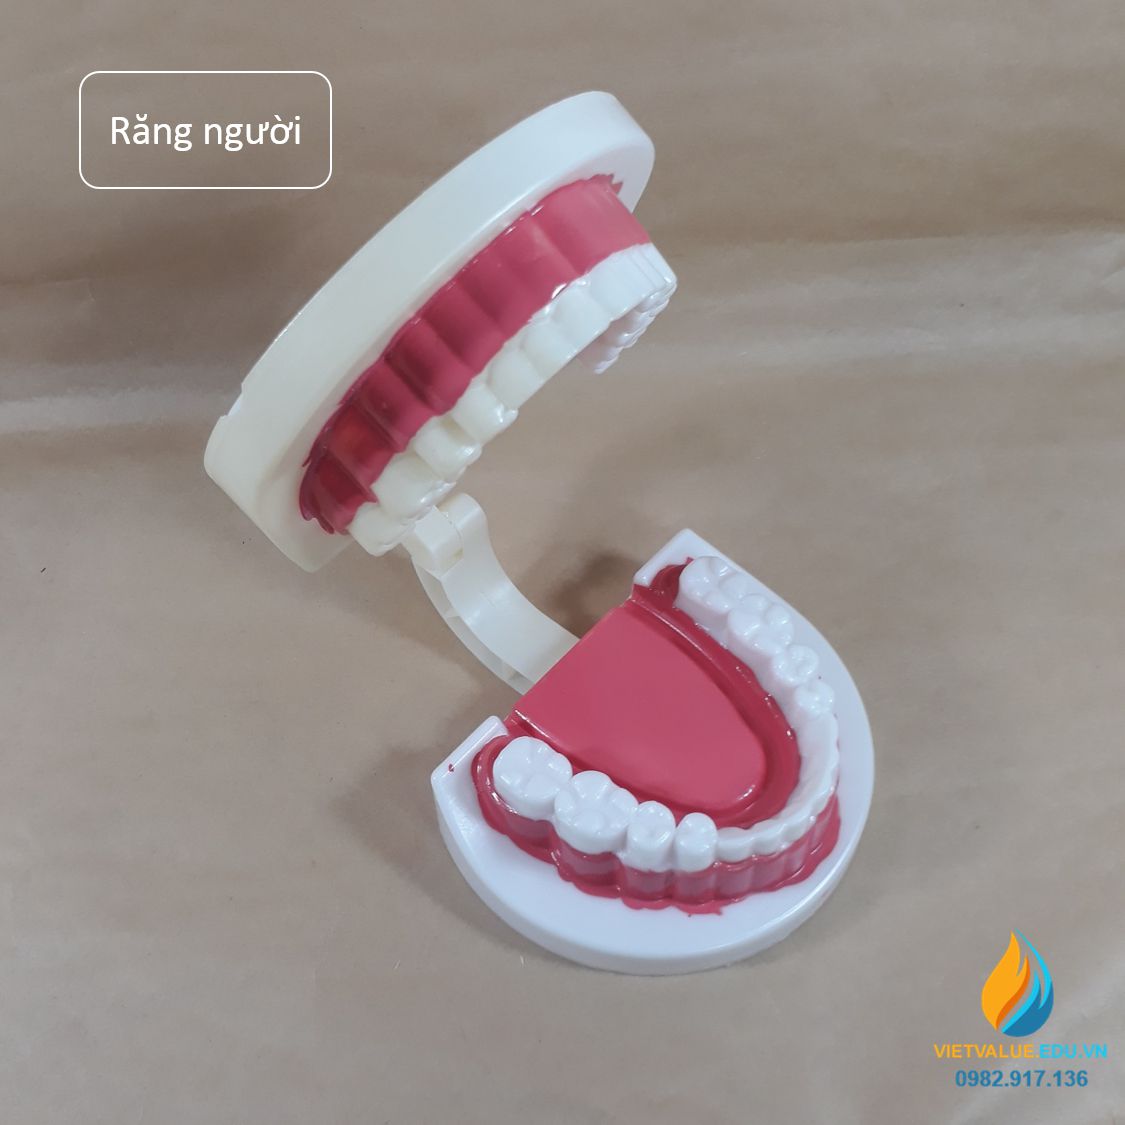 Mô hình hàm răng cho trẻ em học tập theo thông tư 02